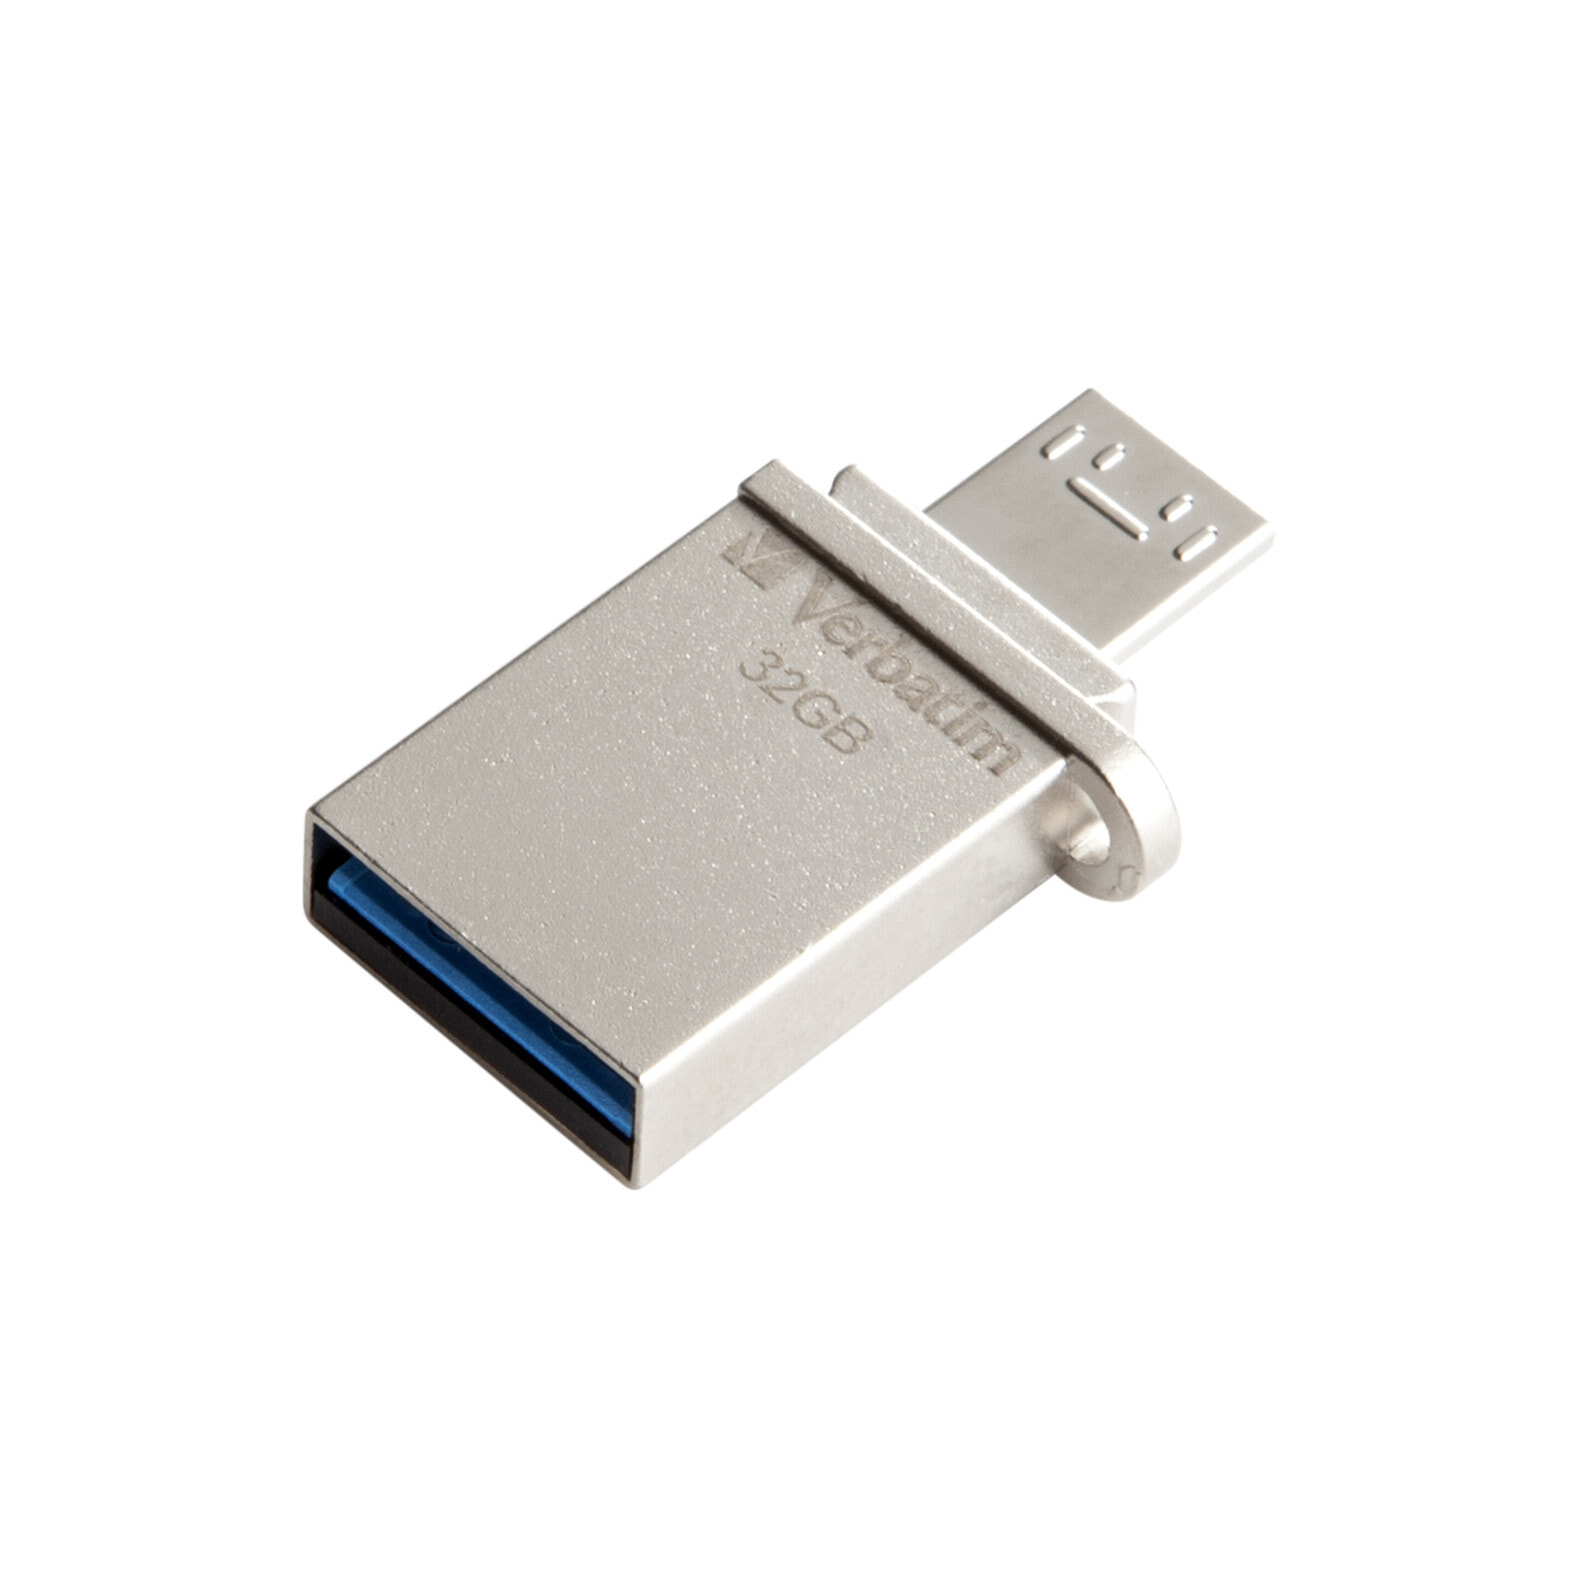 Флешка 64 микро. OTG флешка 64gb Micro USB. Флешка Verbatim Micro USB Drive 16gb. Флешка Verbatim Dual Drive OTG/USB 2.0 32gb. Флешка Microdrive 32gb OTG Type c.